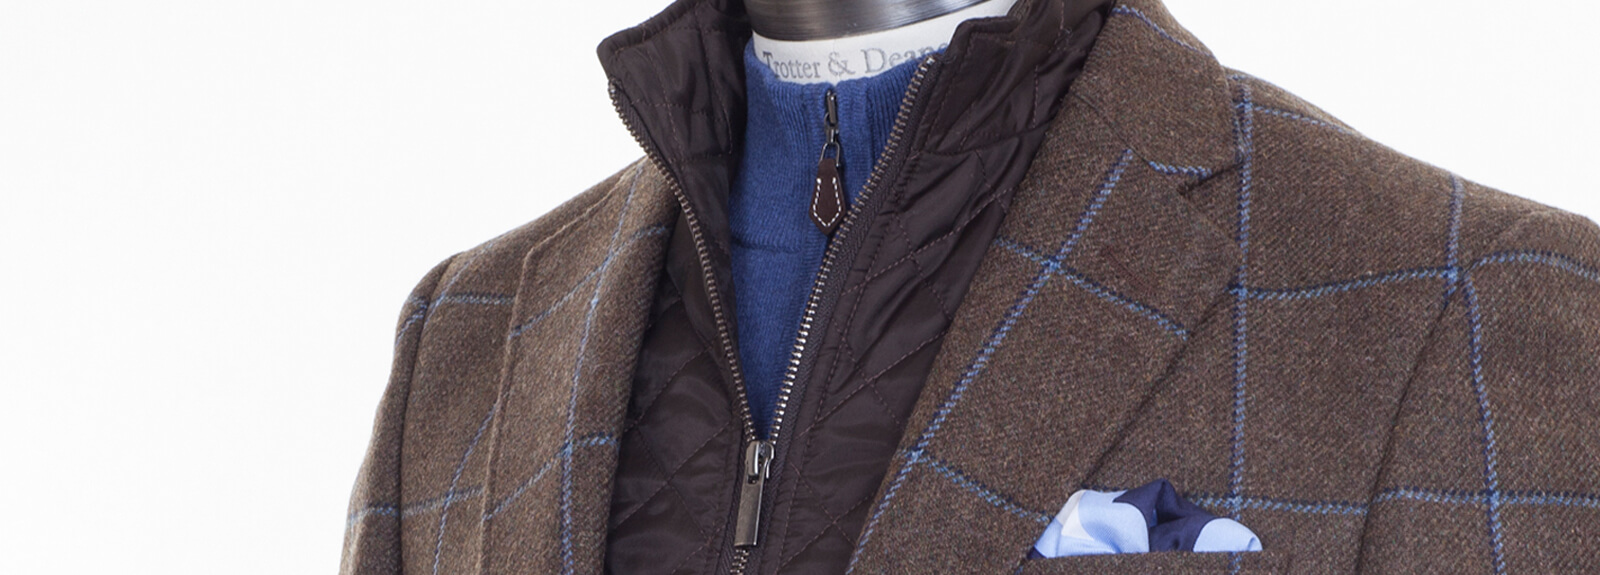 Men's Tailored Jackets | Bury St Edmunds & Cambridge | Trotter & Deane